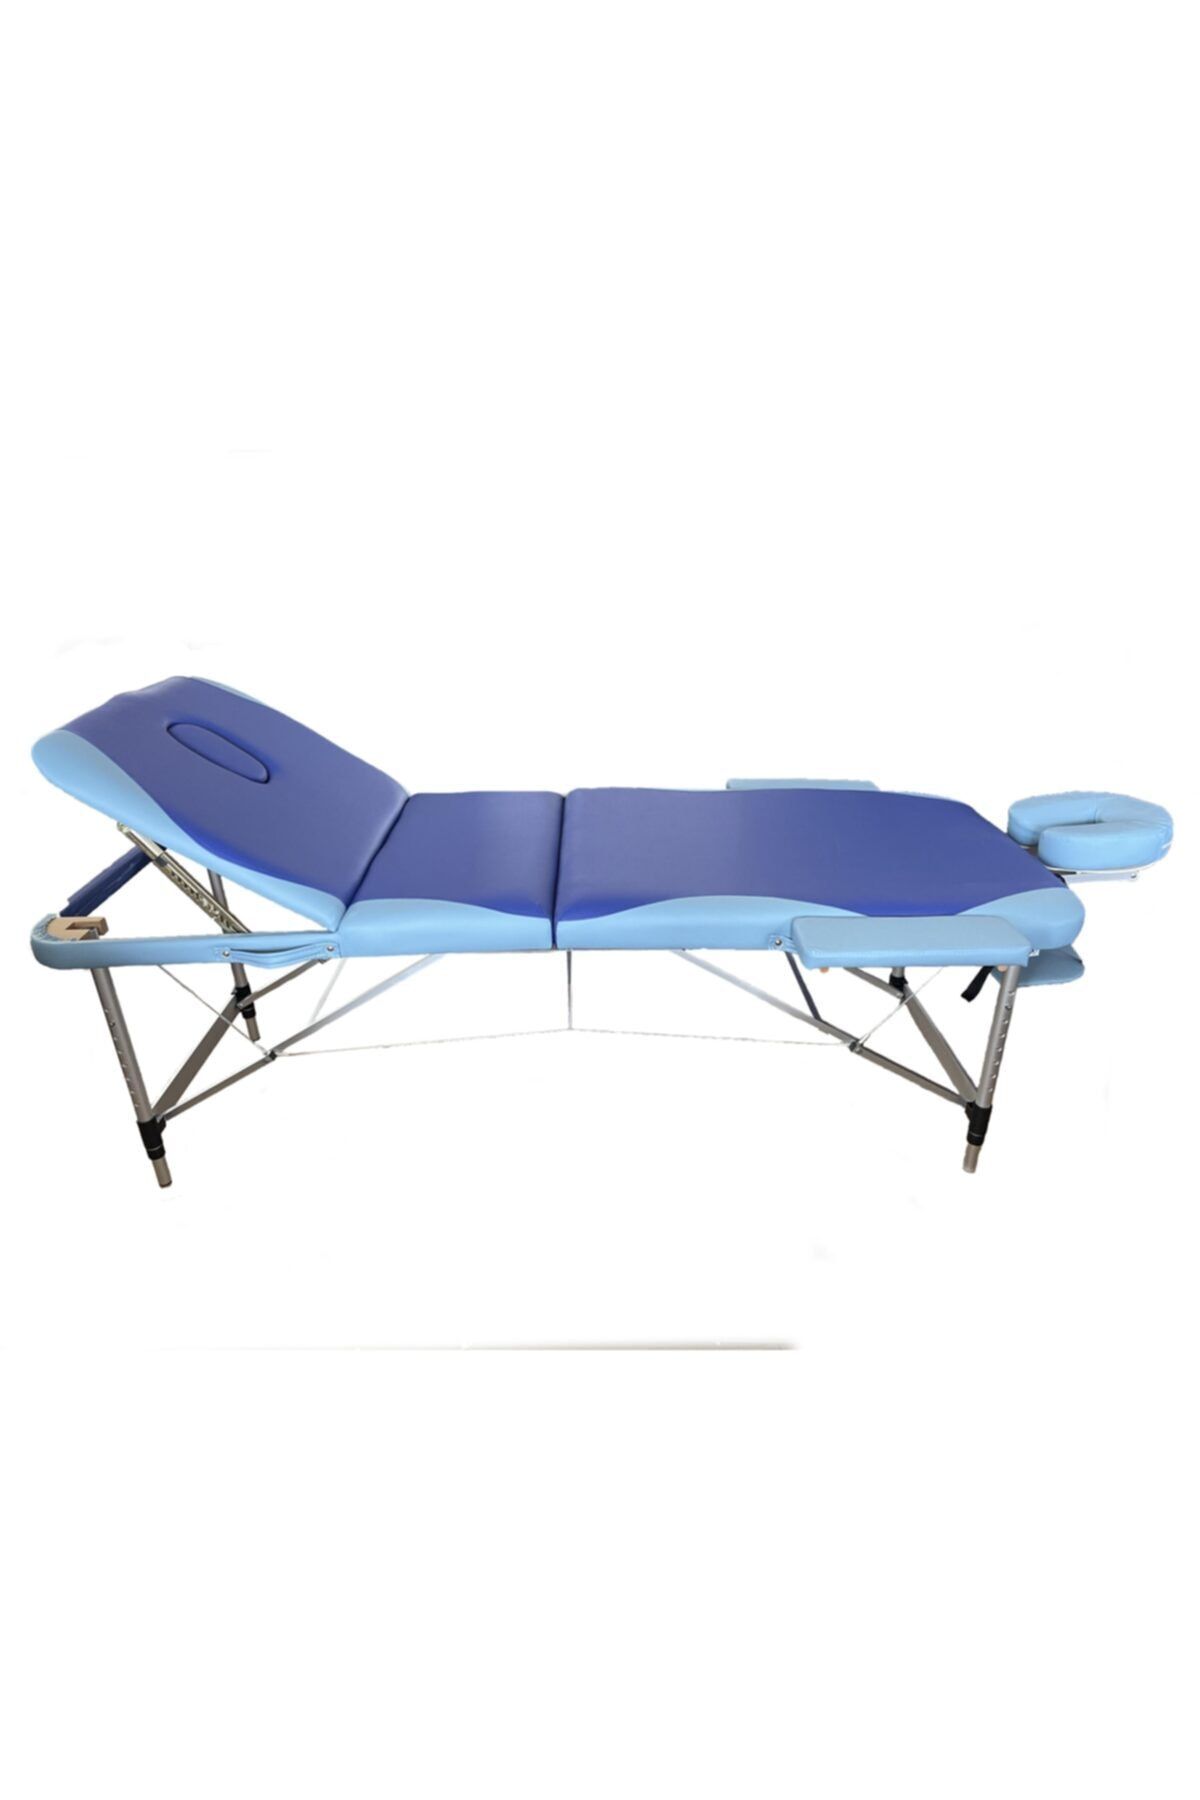 MAXİ Katlanabilir 3 Parçalı Metal Masaj Masası,
çanta Tipi Masaj Ve Tedavi Yatağı Lacivert-mavi